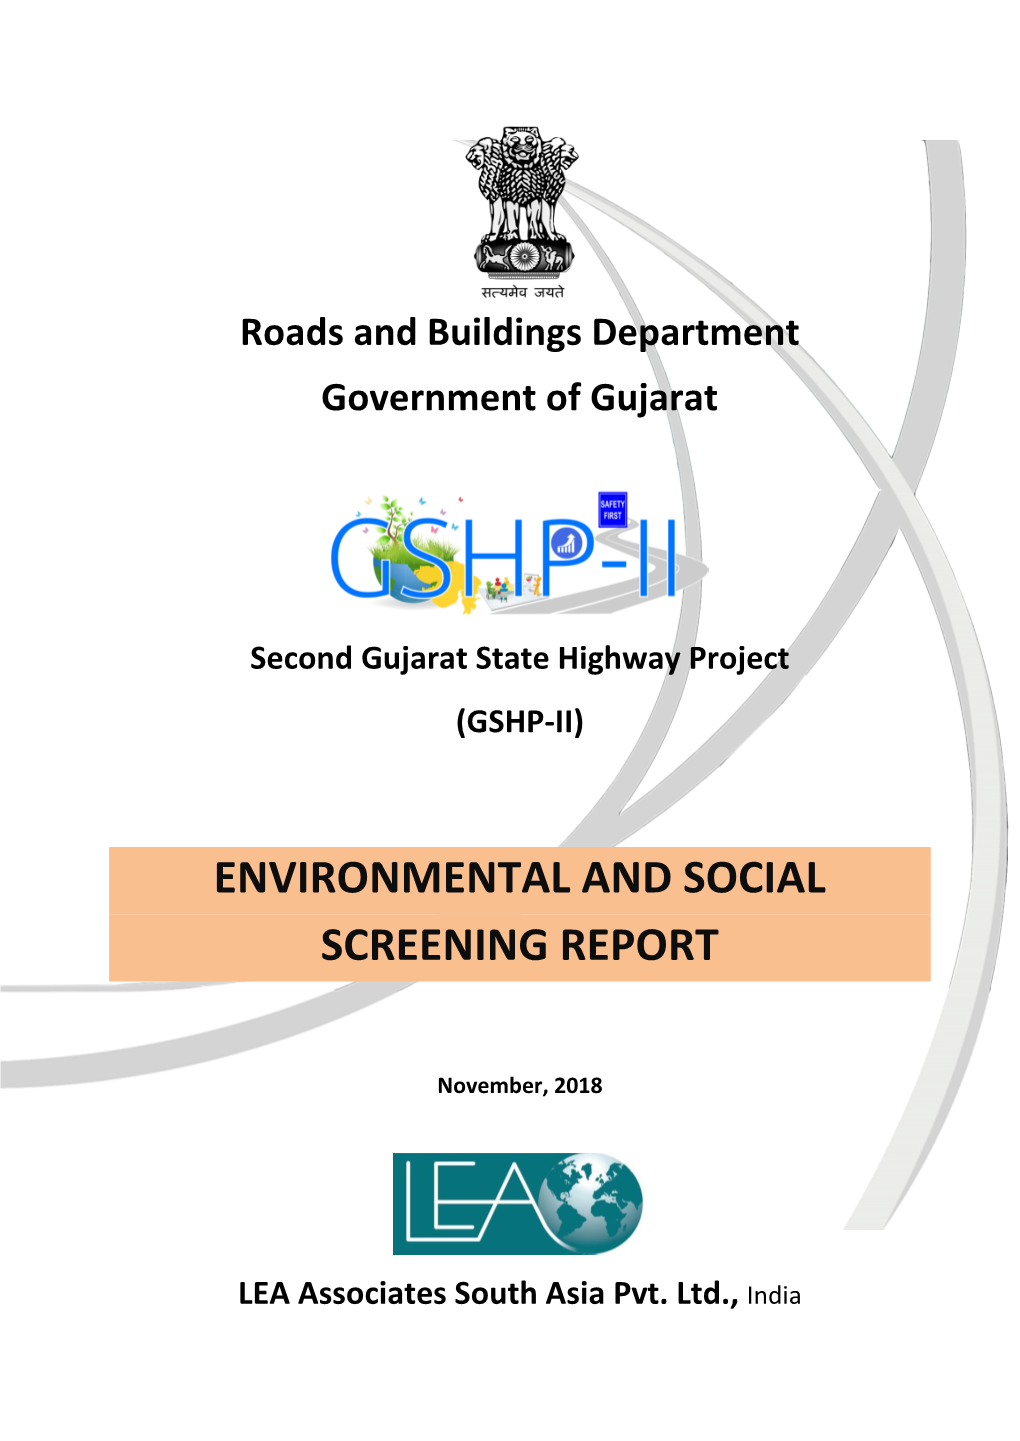 Environmental and Social Screening Report